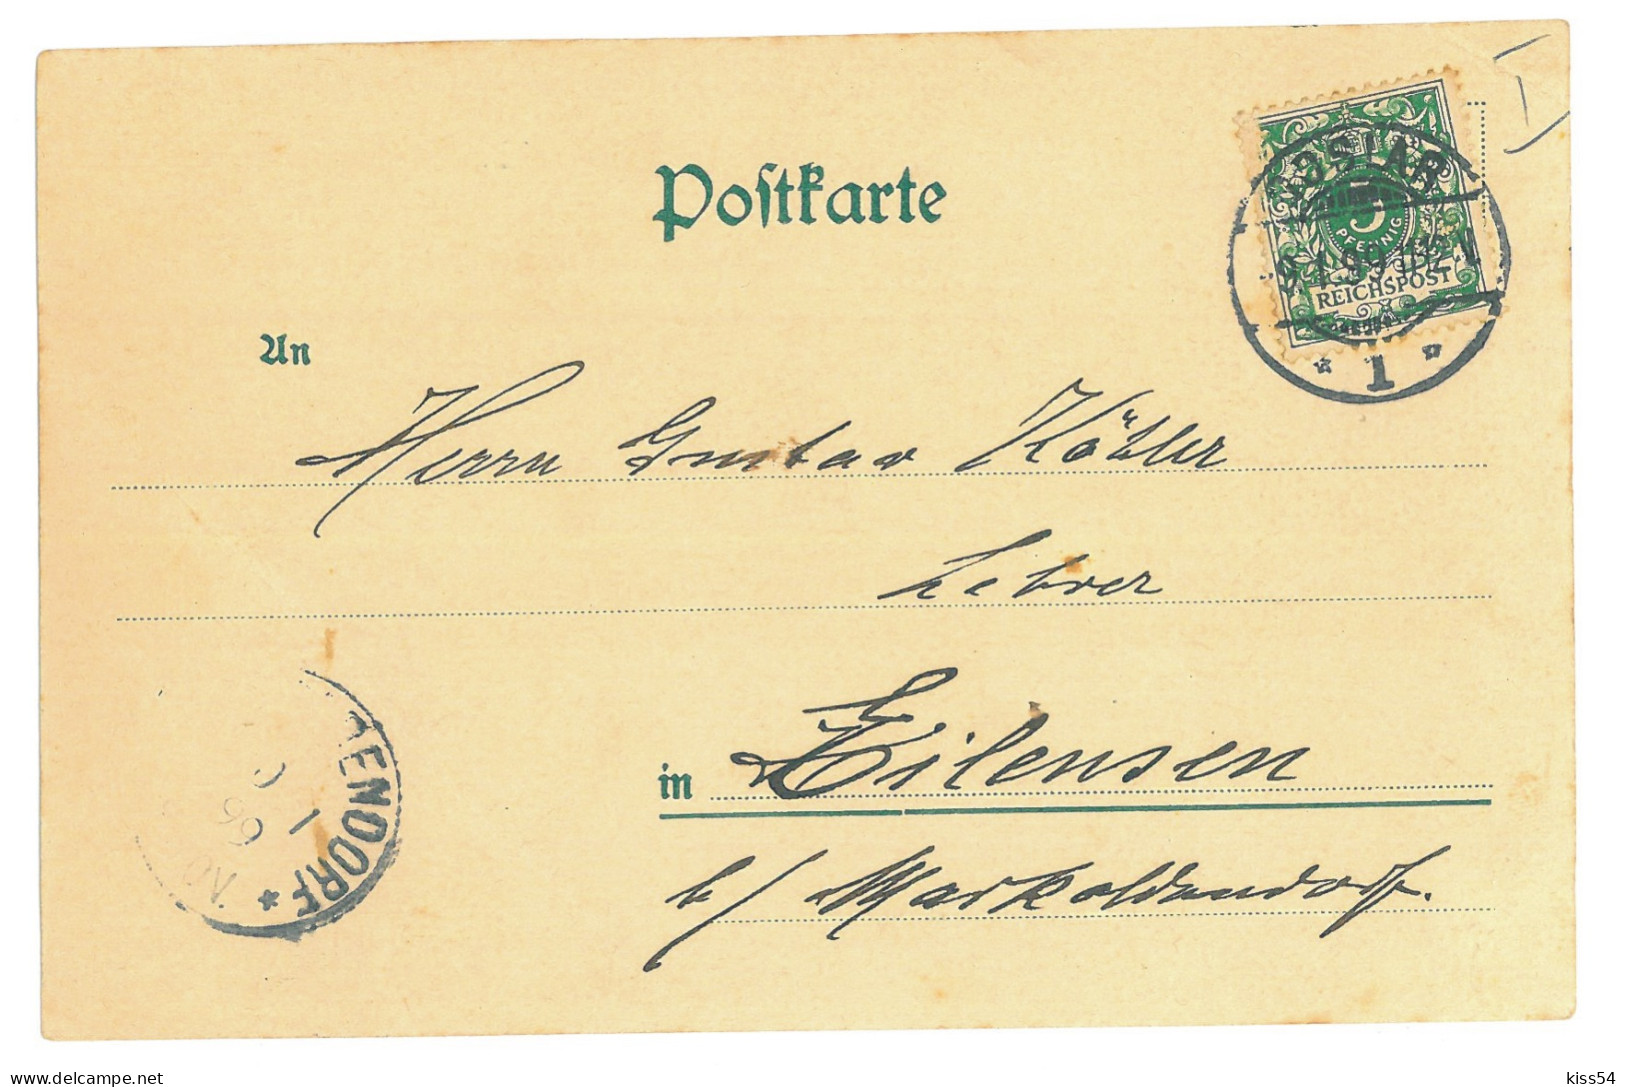 GER 58 - 17207 GOSLAR, Litho, Germany - Old Postcard - Used - 1899 - Goslar